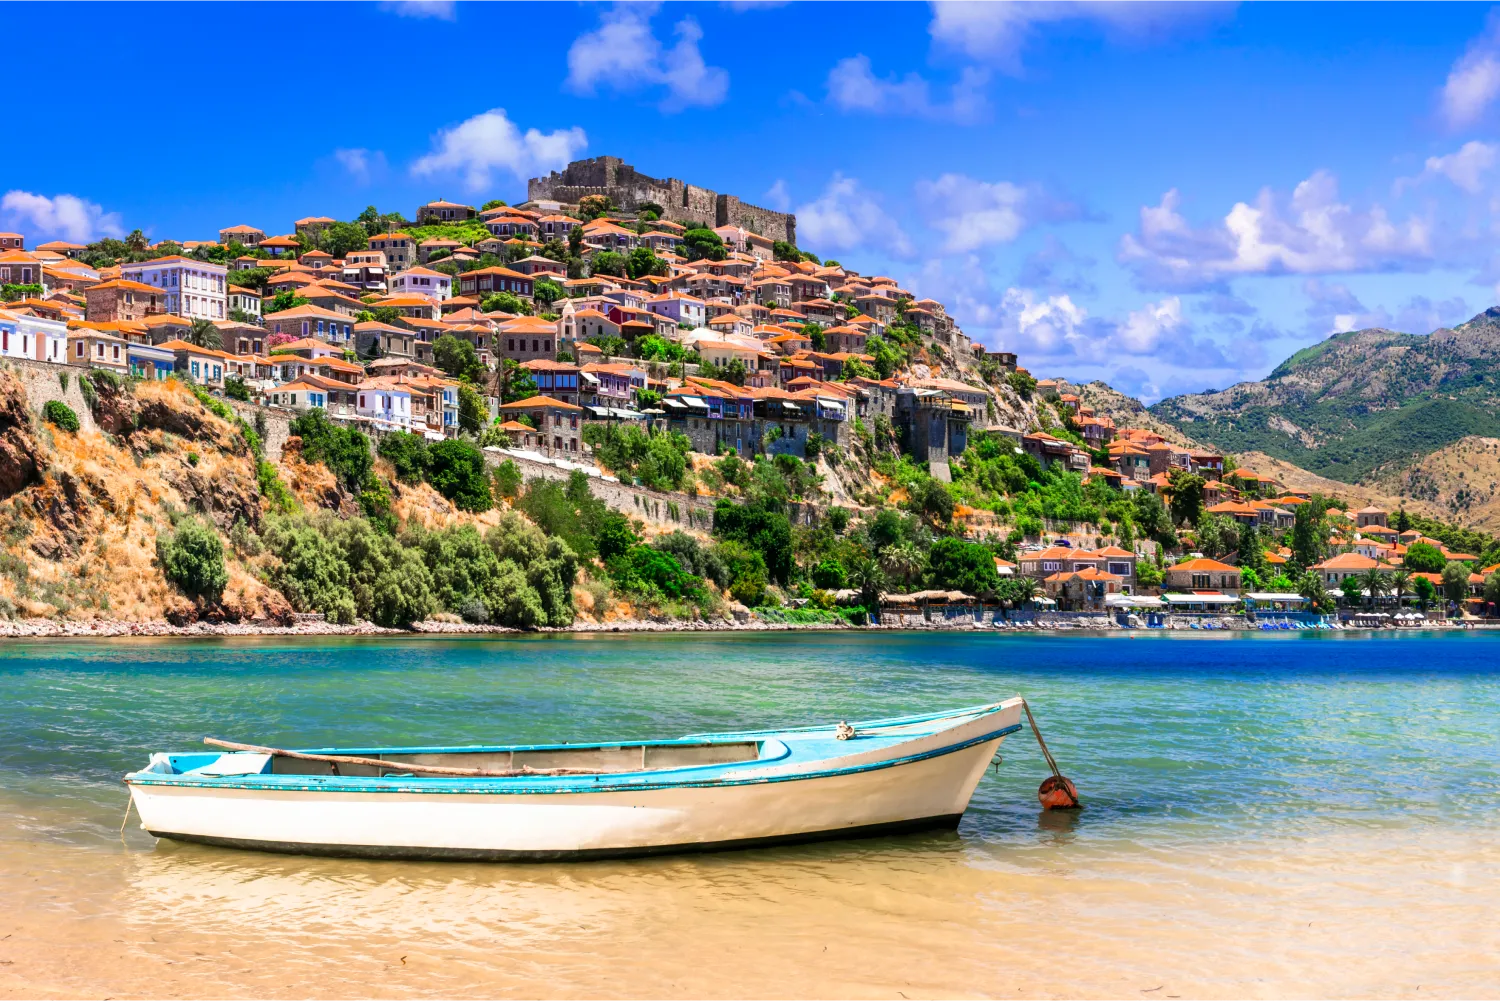 Festung mit Blick auf die Stadt und ihre schöne Bucht auf Lesbos